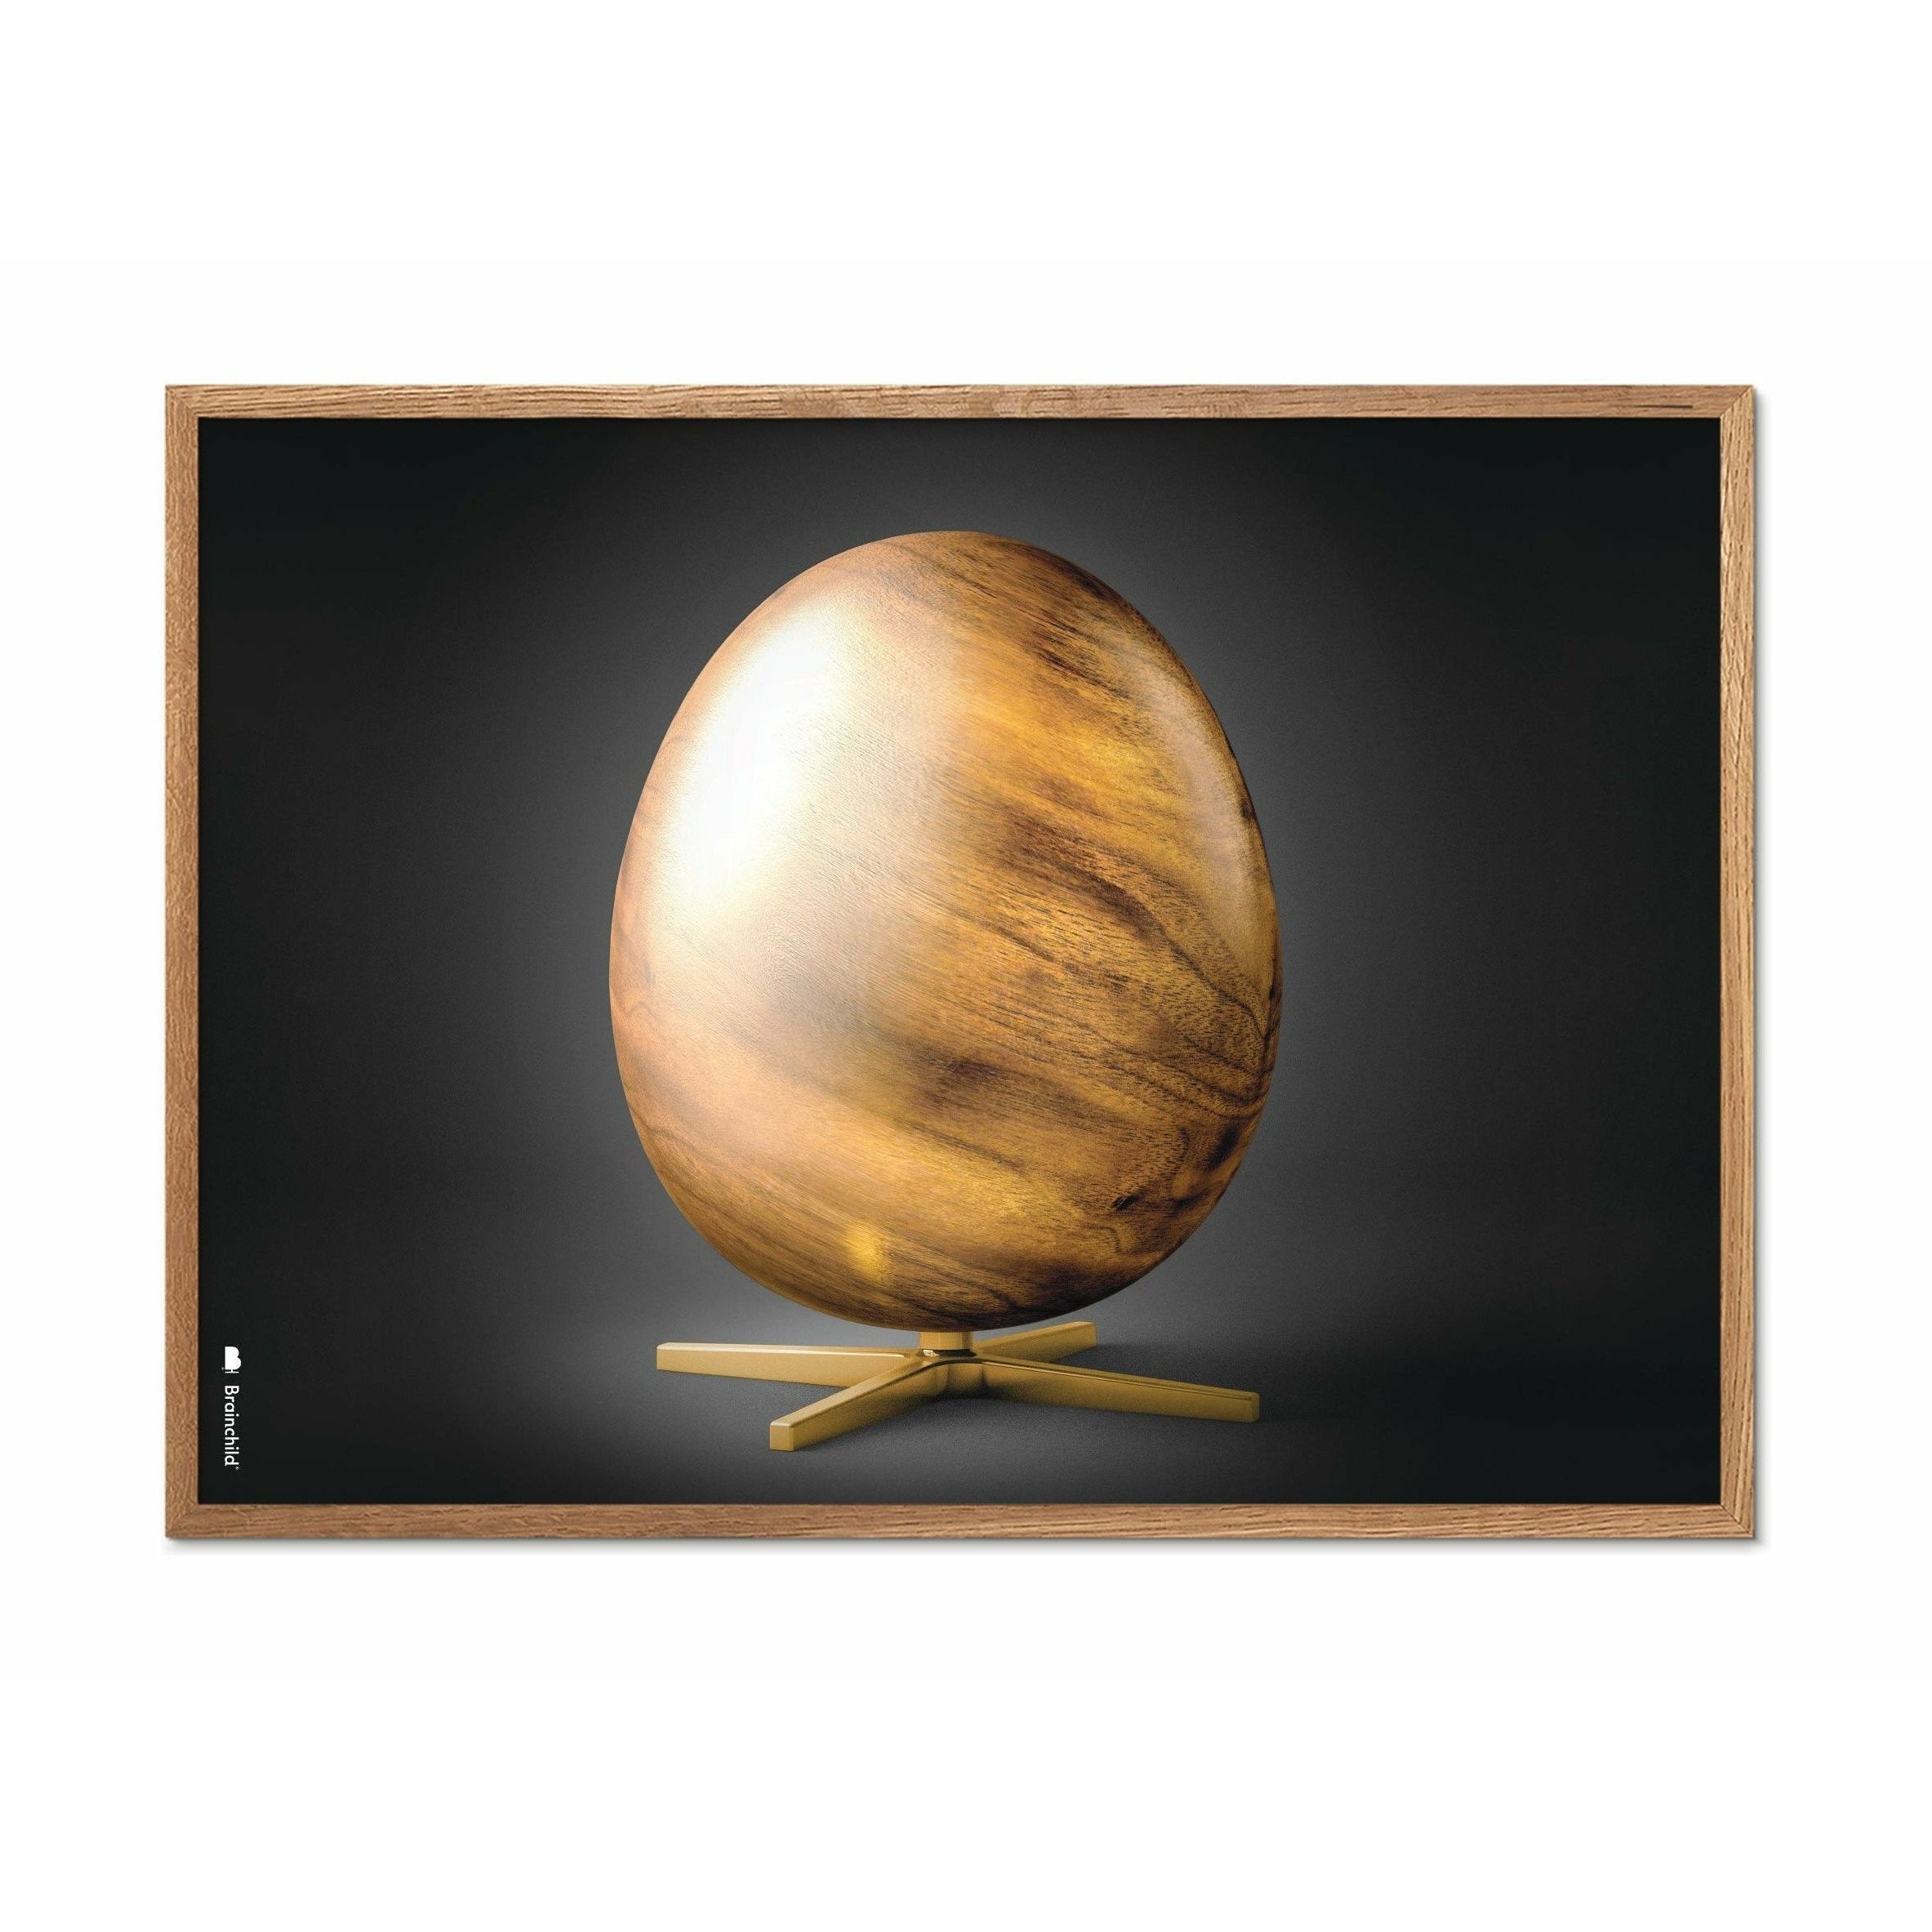 Brainchild Egg Cross Format Poster, Frame Made Of Light Wood 50x70 Cm, Black